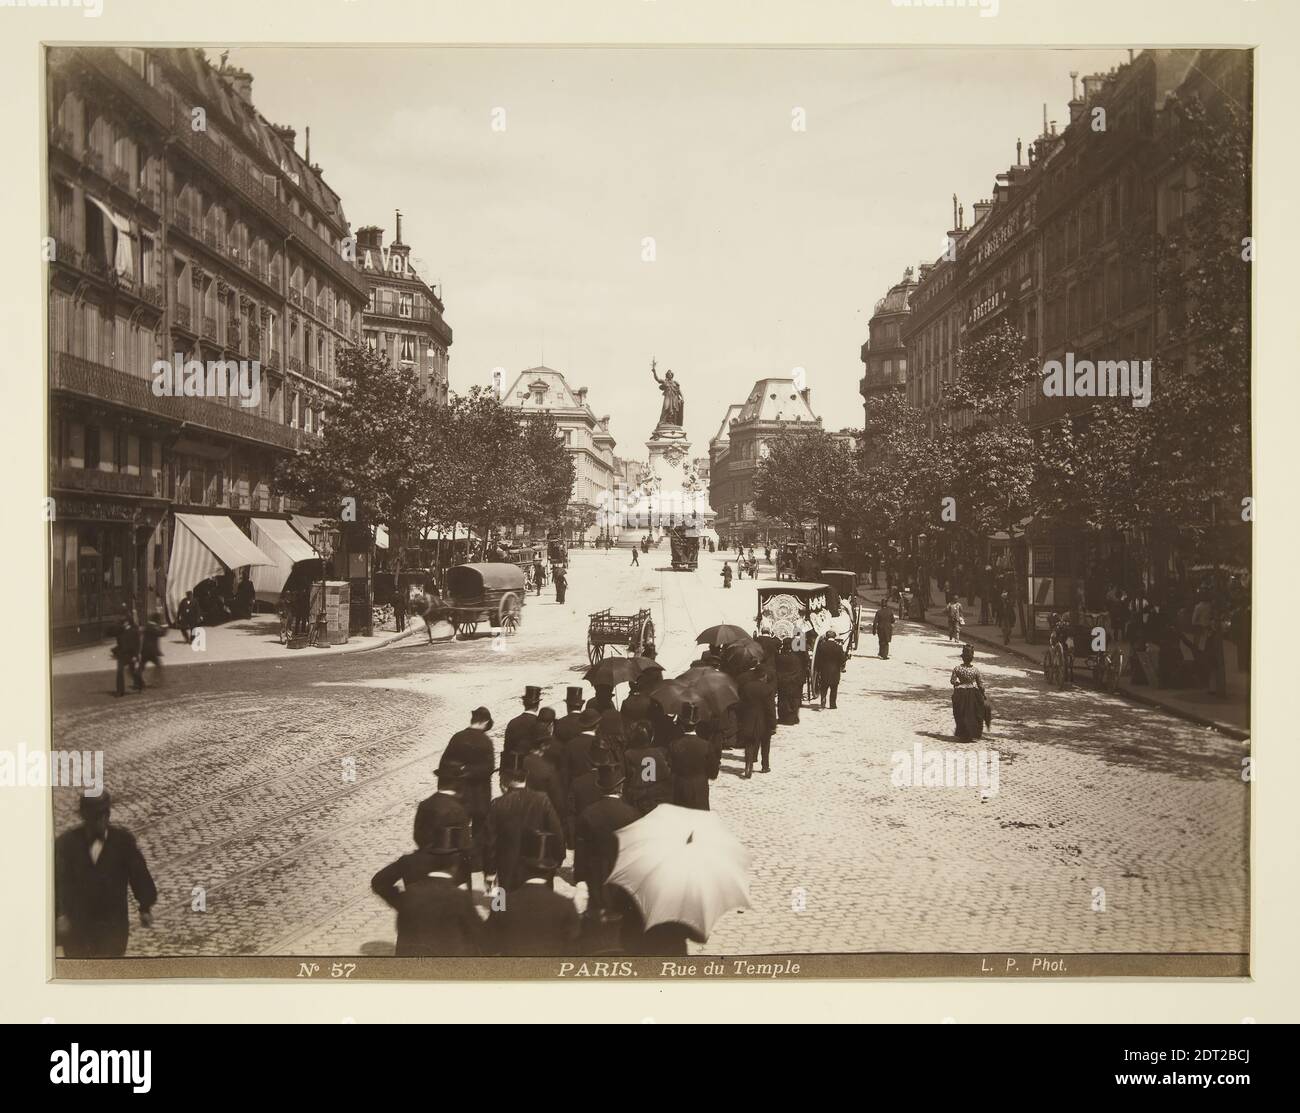 Beerdigung Cortege, Paris, Albumendruck, 21.3 × 27.4 cm (8 3/8 × 10 13/16 in.), dargestellt Paris, Frankreich, 19. Jahrhundert, Arbeiten auf Papier - Fotografien Stockfoto